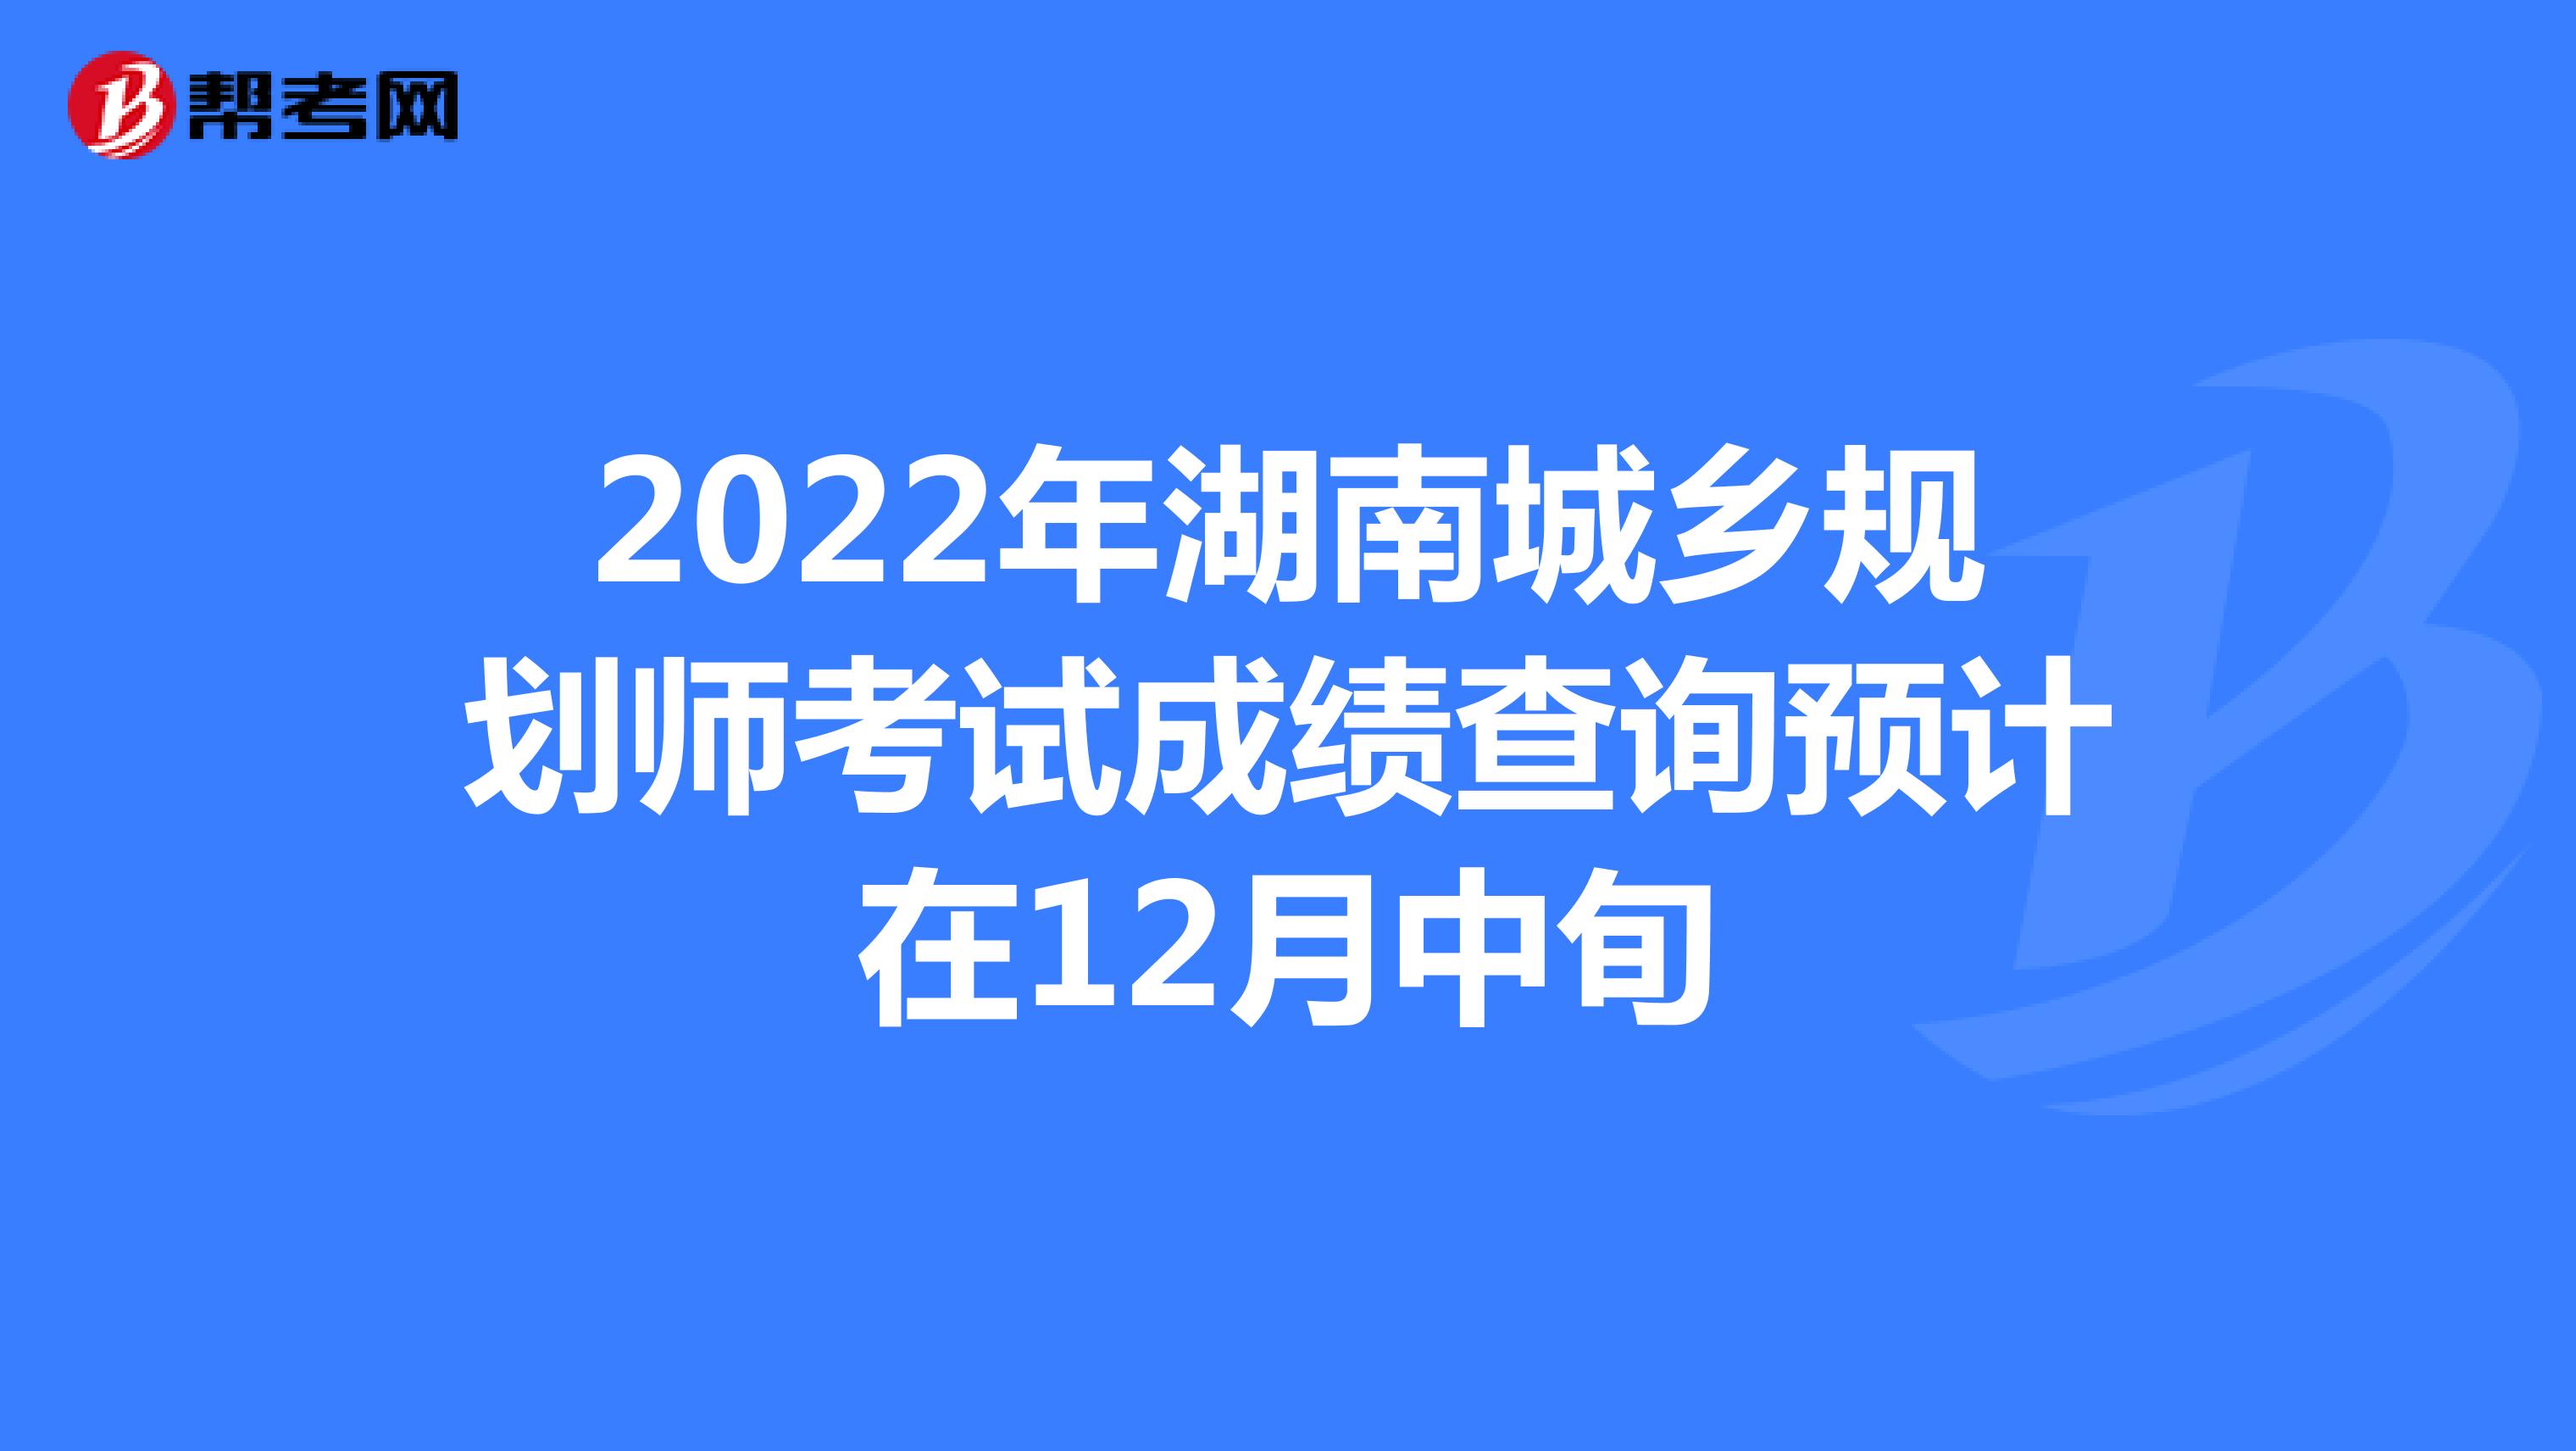 2022年湖南城乡规划师考试成绩查询预计在12月中旬